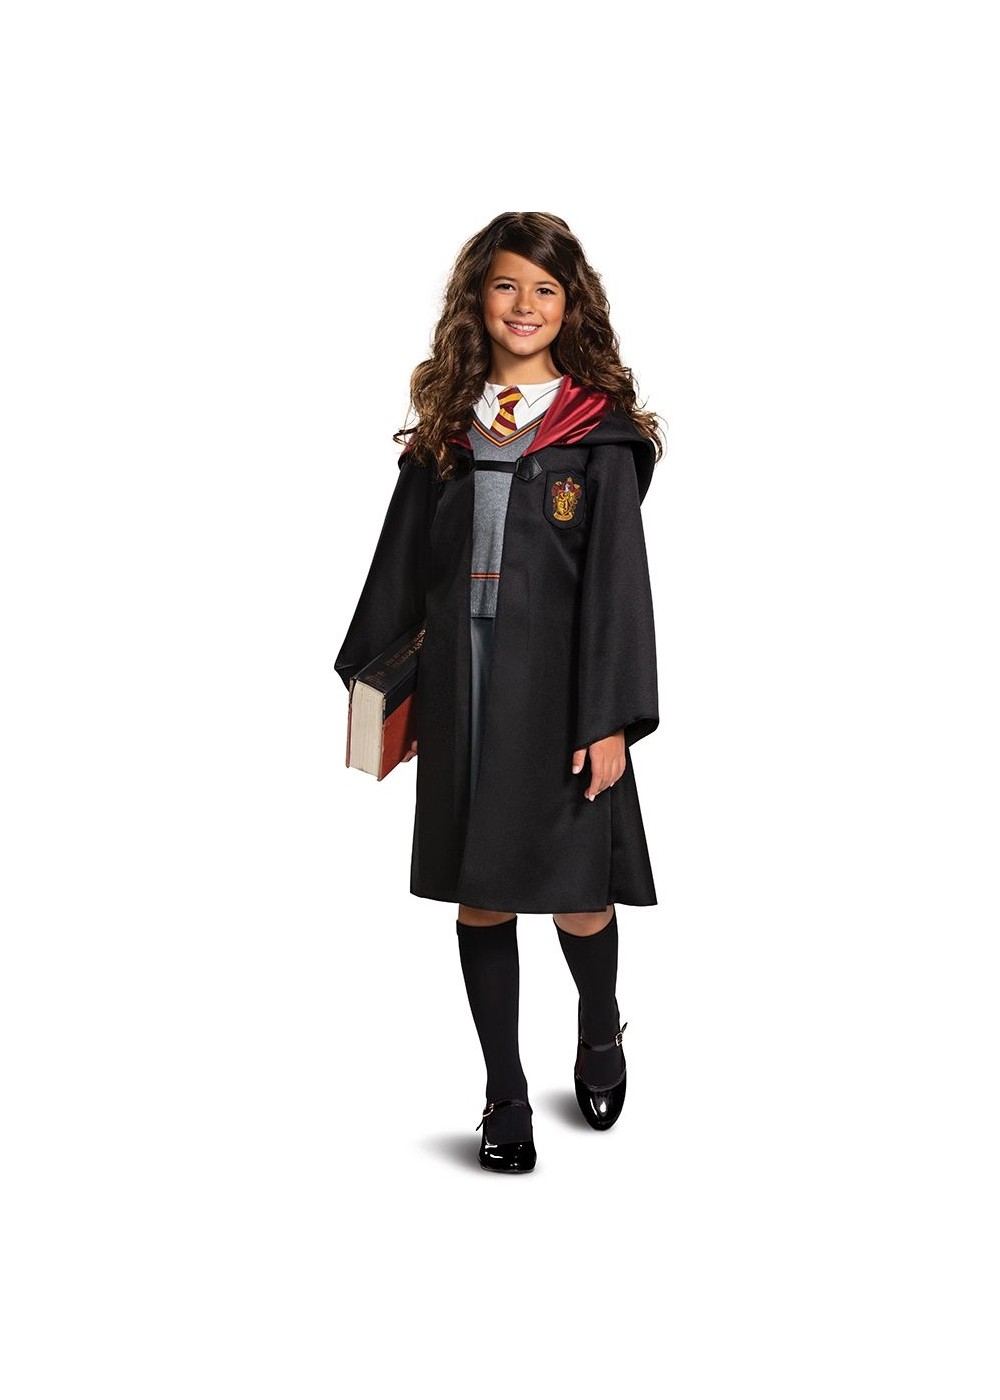 Hermione Granger Costume For Tween Girls